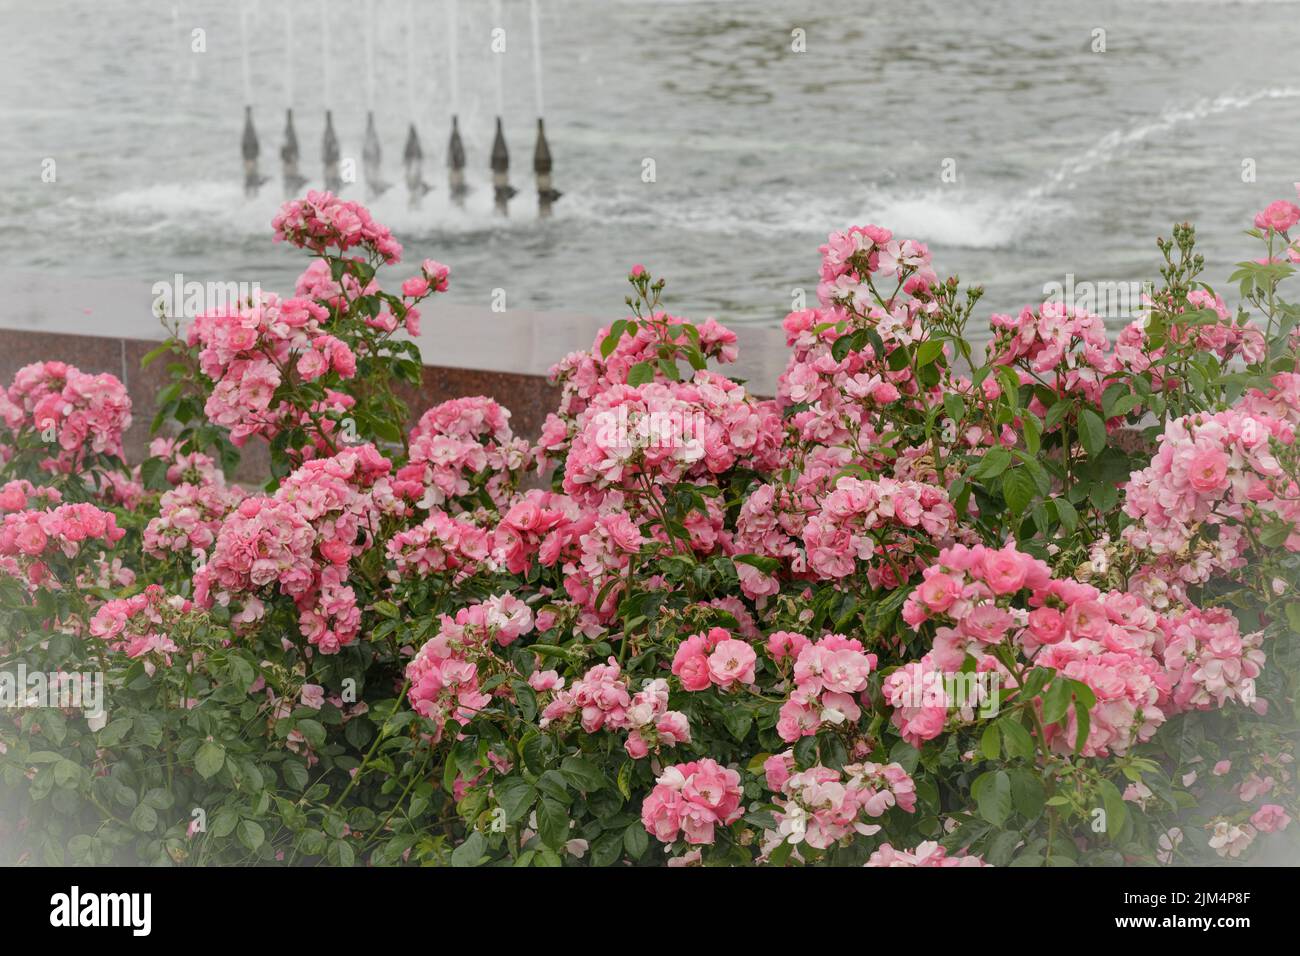 Brousse en fleurs de roses du parc dans le jardin décoratif d'été. Papier peint avec roses roses du parc. Nature estivale. Carte postale fleurs Banque D'Images